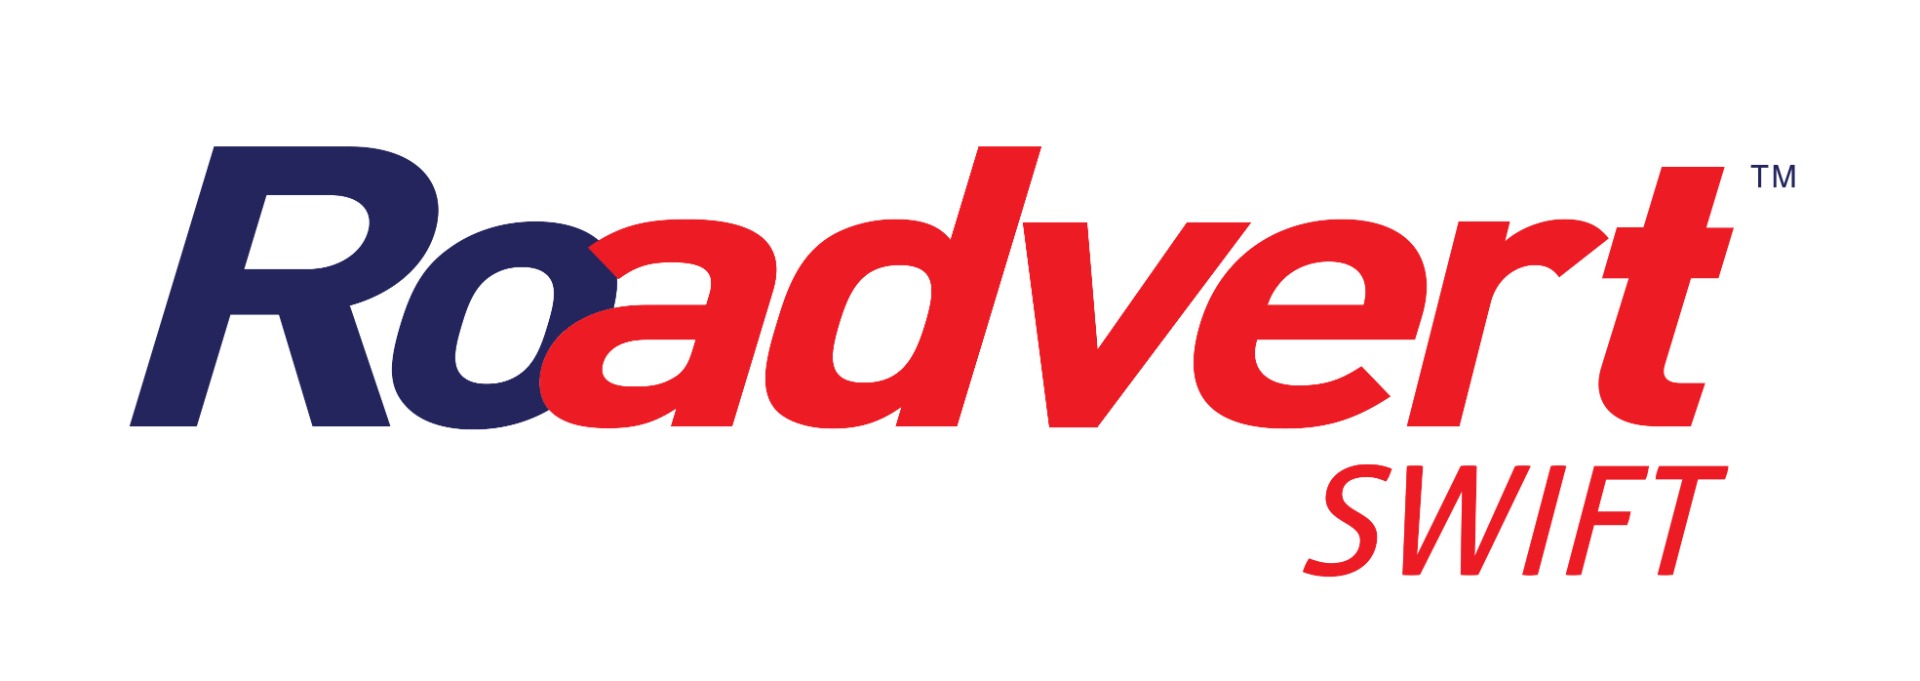 Roadvert Swift Logo